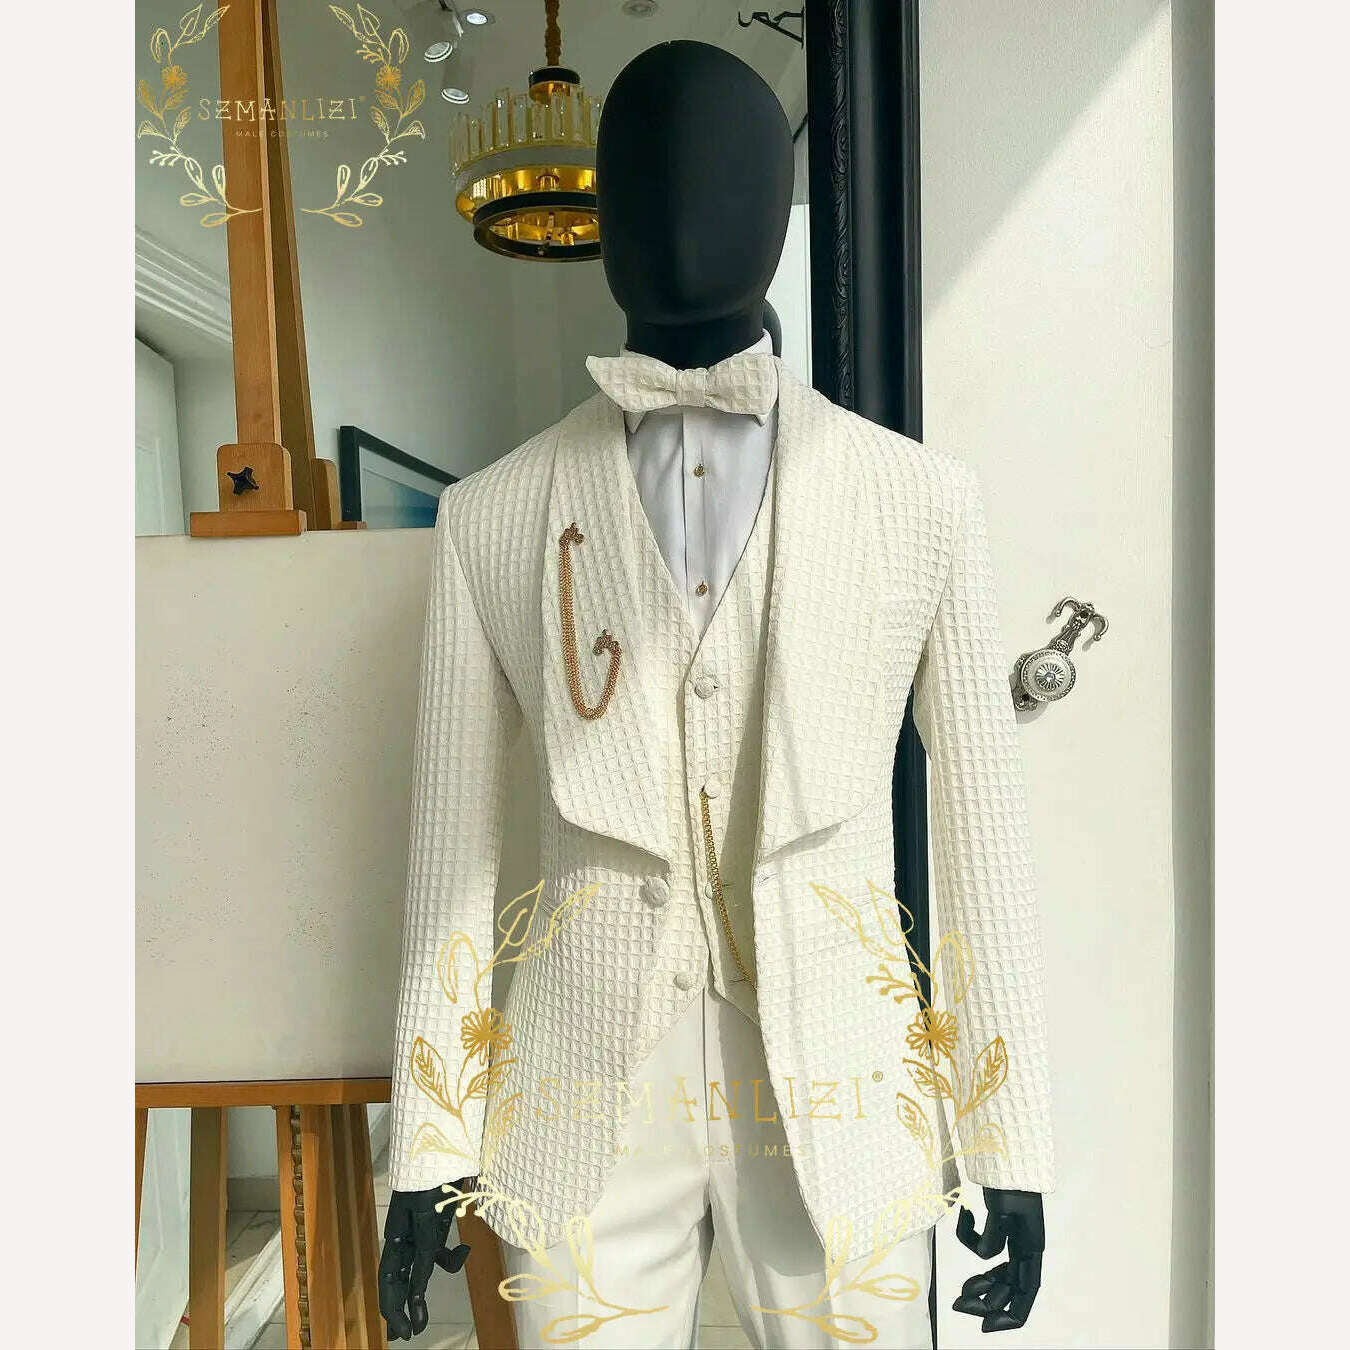 KIMLUD, Luxury Floral Wedding Tuxedo For Groom Slim Fit Men Suits Brown Velvet Peak Lapel Costume Homme 3 Pieces Blazer Vest Pants Sets, as picture 3 / XS(EU44 Or US34), KIMLUD Women's Clothes